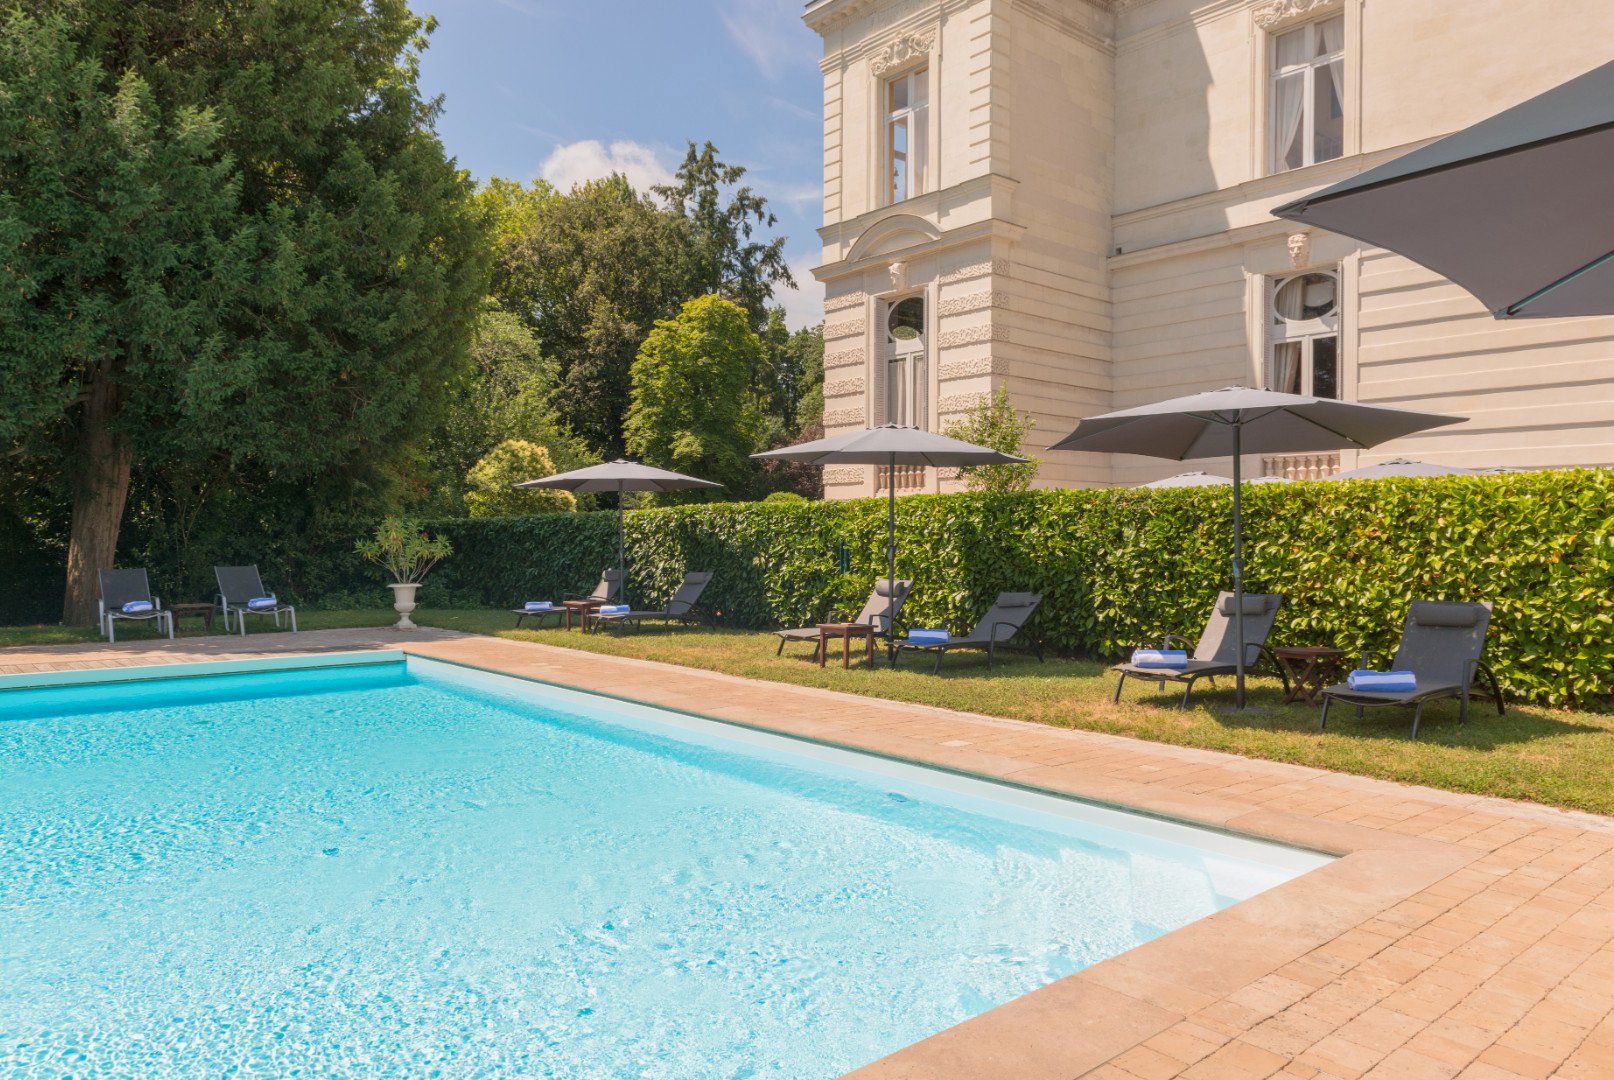 127/piscine  spa/Chateau de Verrieres-saumur-piscine-decouverte-7092 copie.jpg